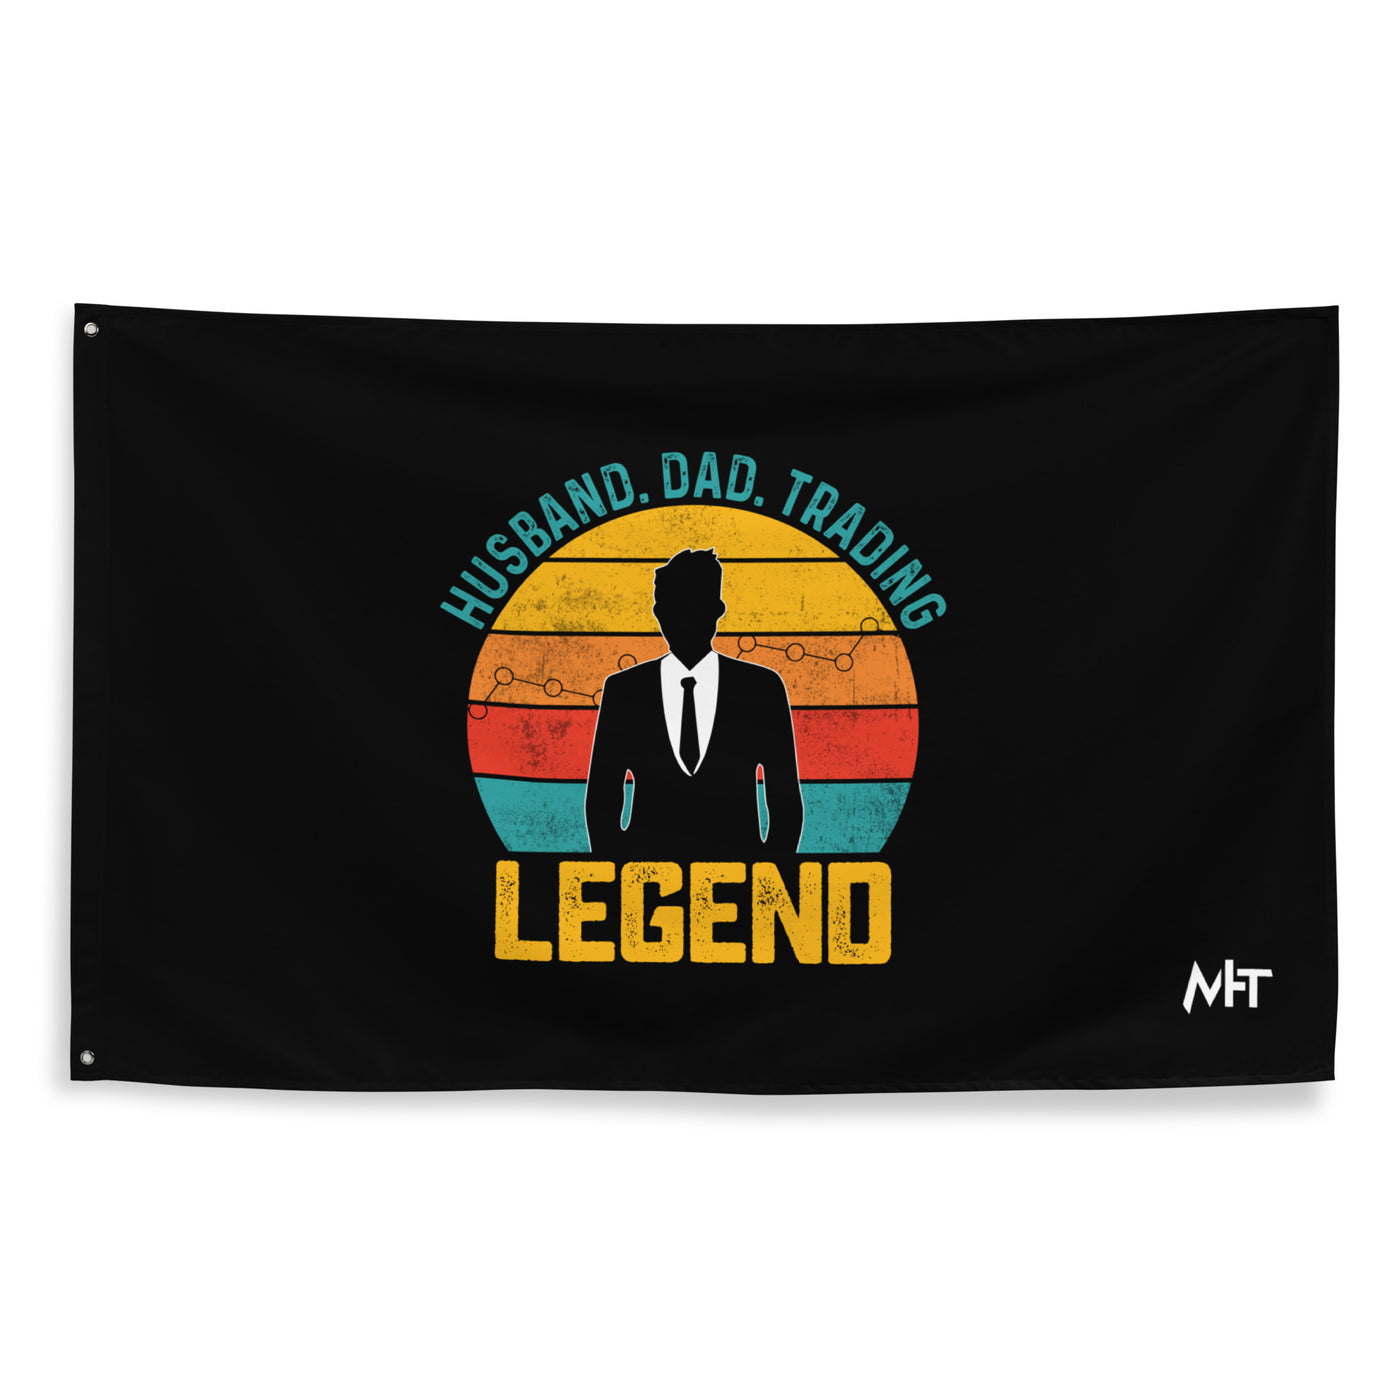 Husband.Dad.Trading Legend - Flag